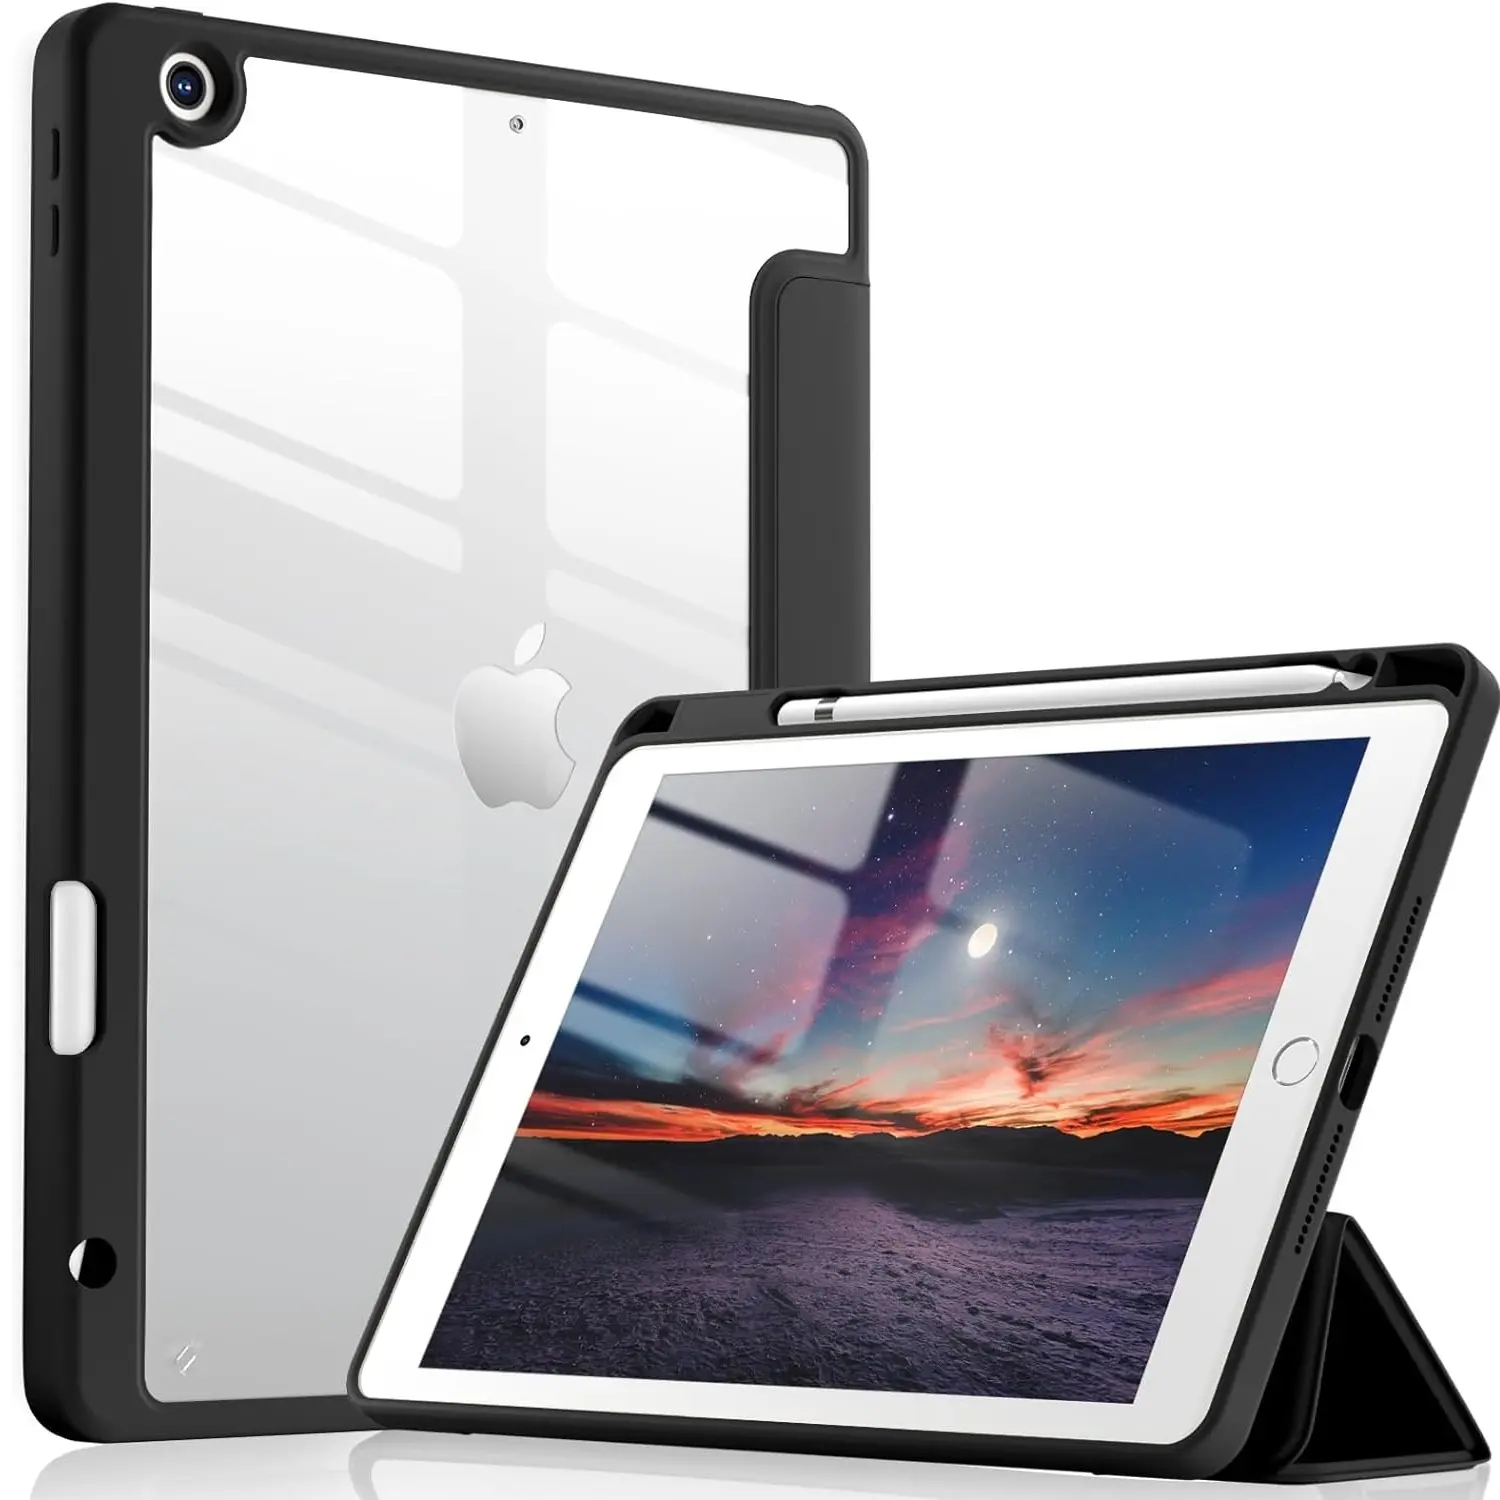 Kalemlik Flip PU Tablet deri akıllı temizle PC Shell kılıf Tablet kapak için iPad hava 3rd 10.5 "2019/iPad Pro 10.5 2017